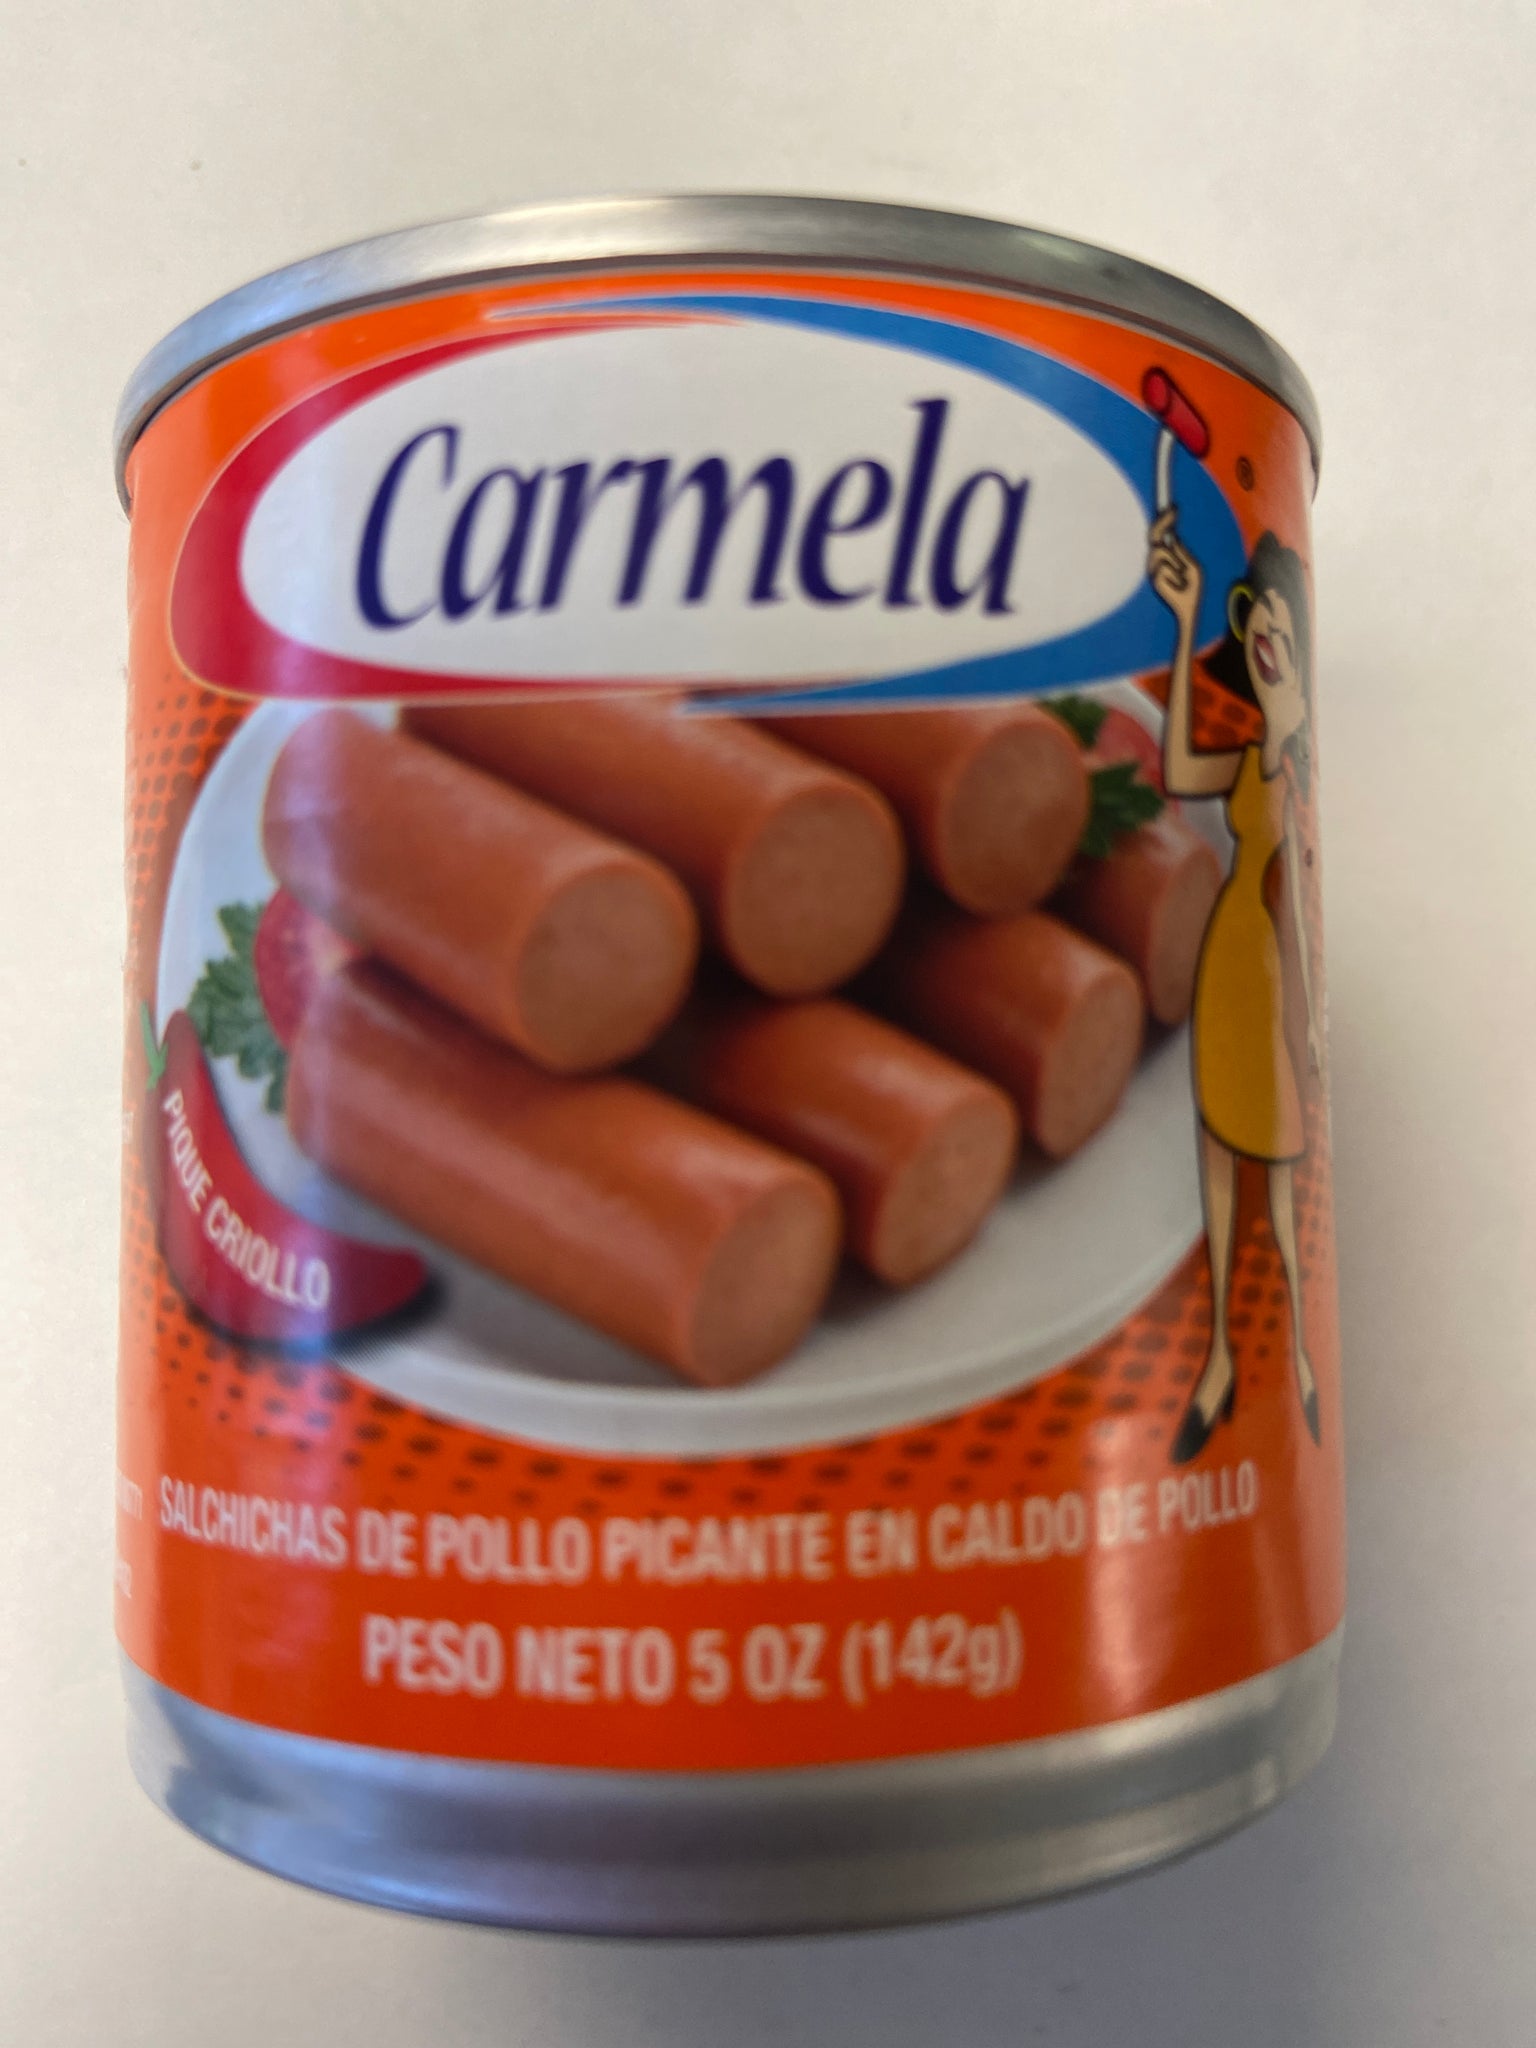 carmela chicken vienna sausage 5 oz